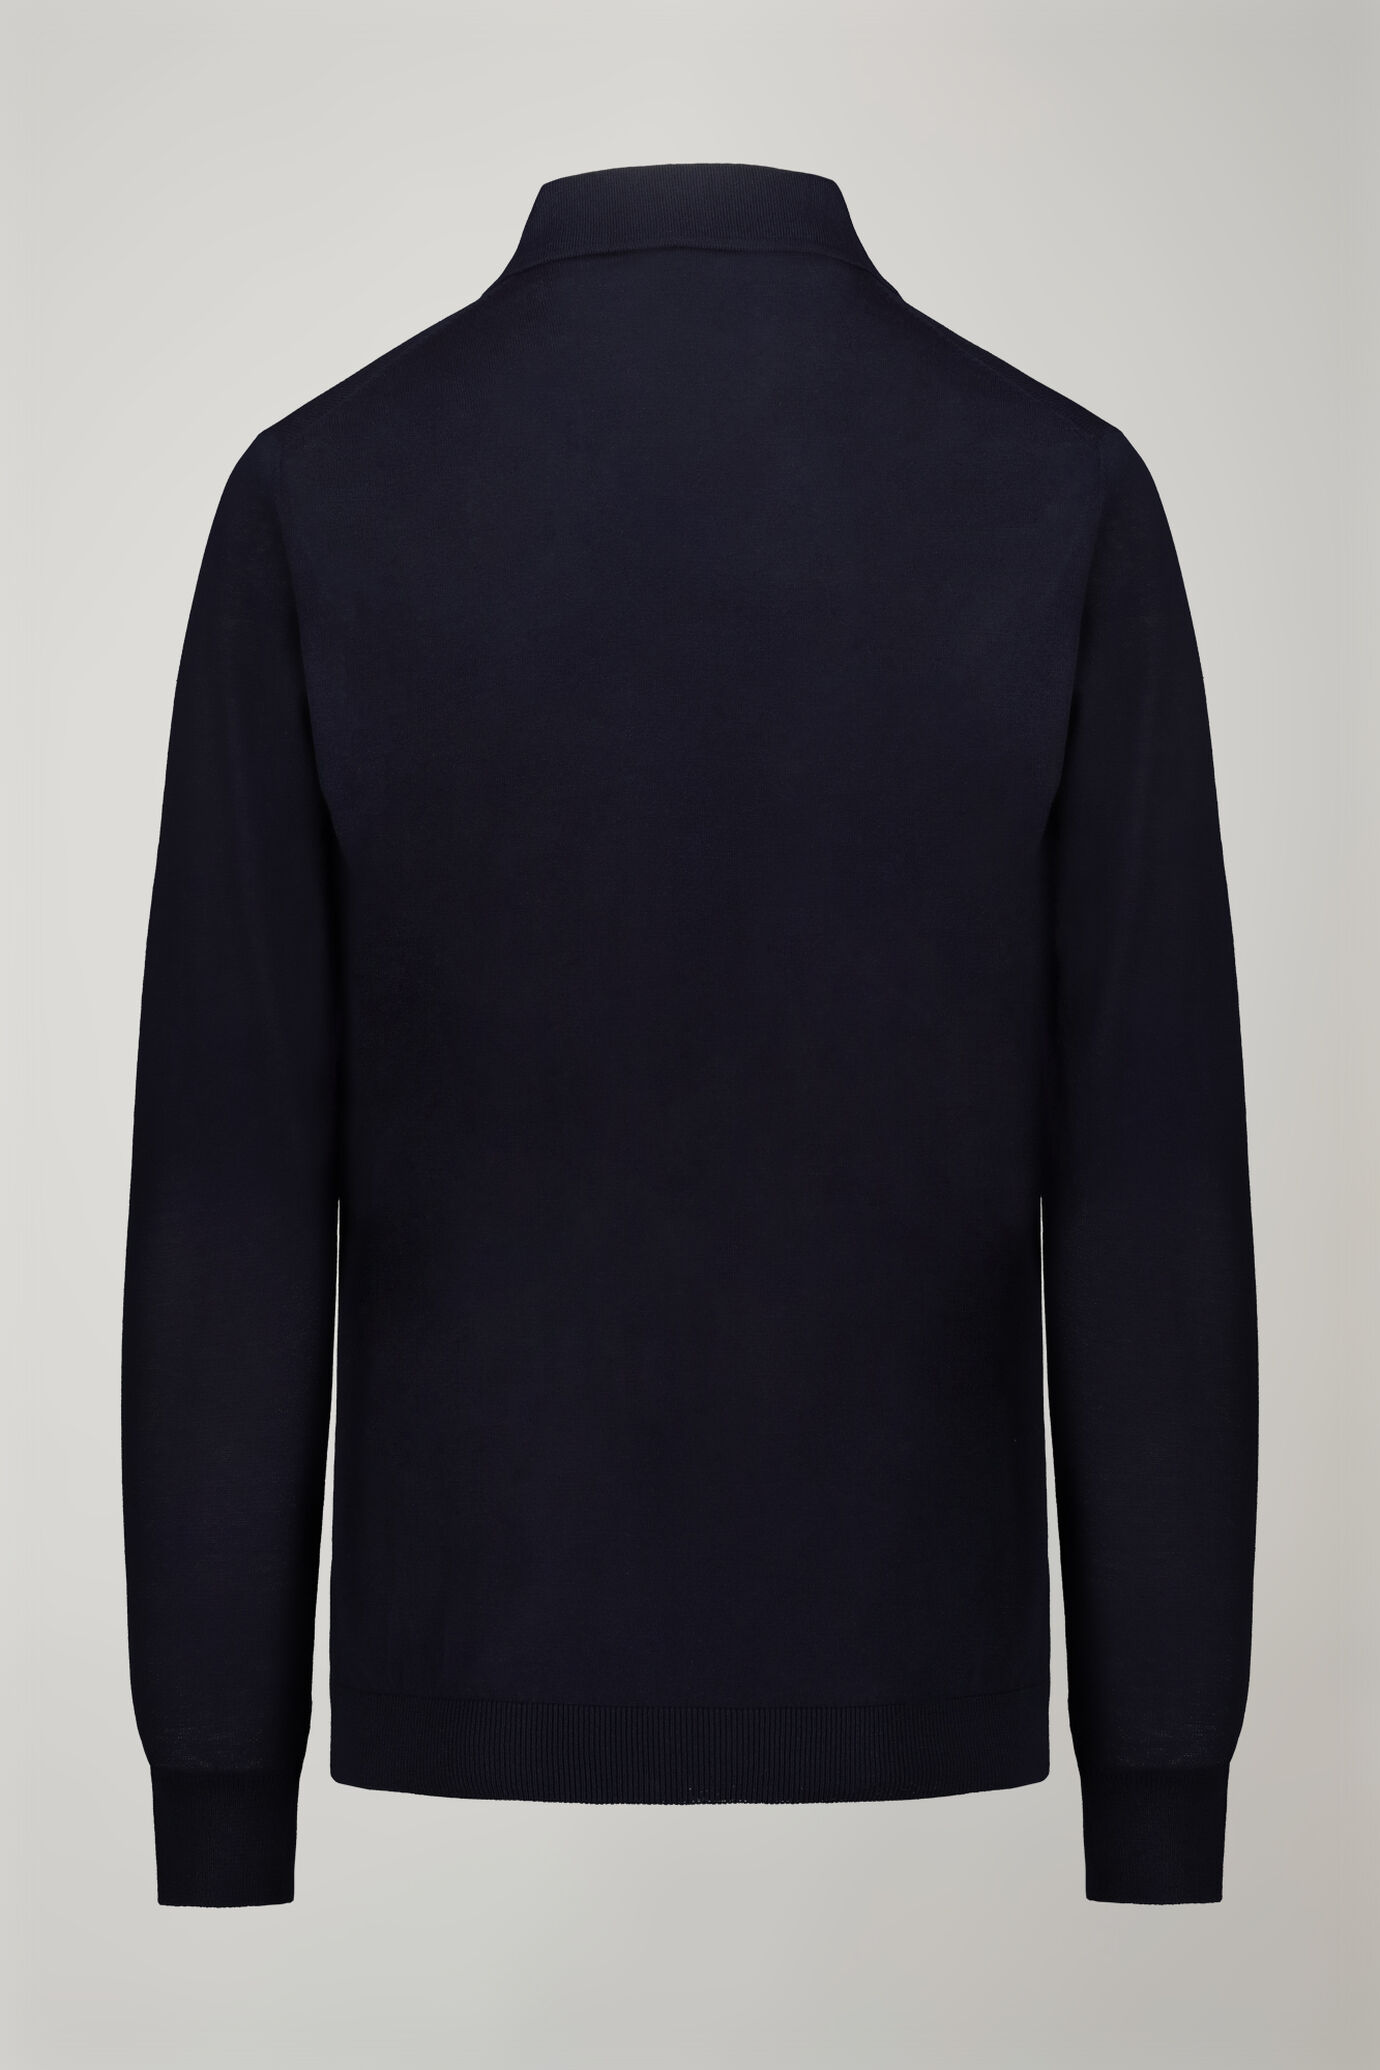 Herren-Poloshirt mit V-Ausschnitt aus 100 % Baumwollstrick und langen Ärmeln in normaler Passform image number 7